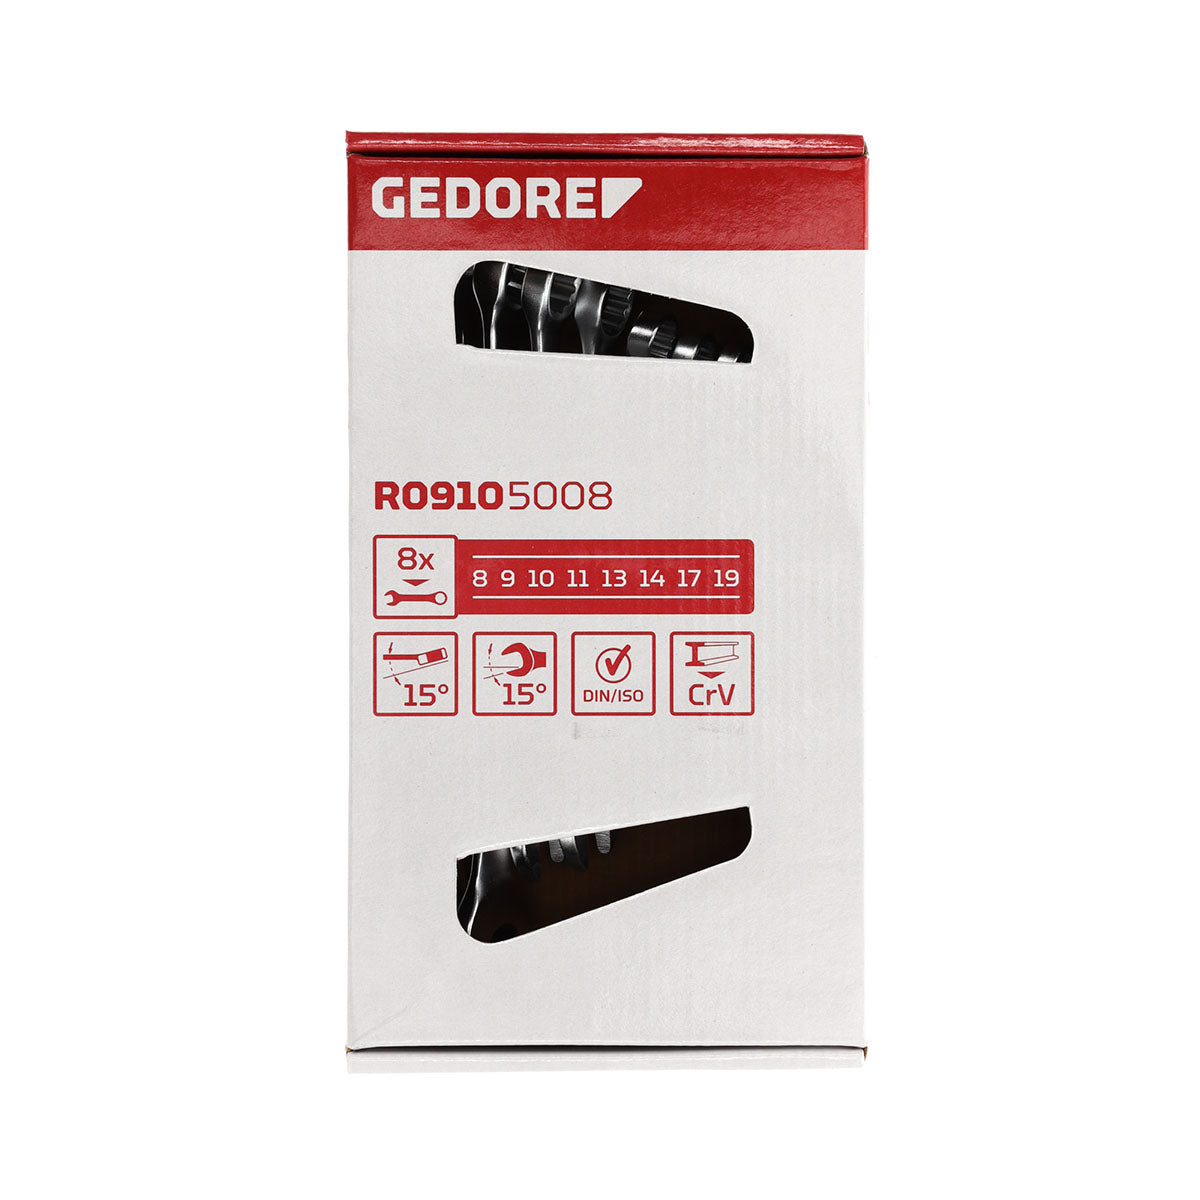 GEDORE rouge R09105008 - Jeu de clés mixtes, 8-19 mm, 8 pièces (3300988)